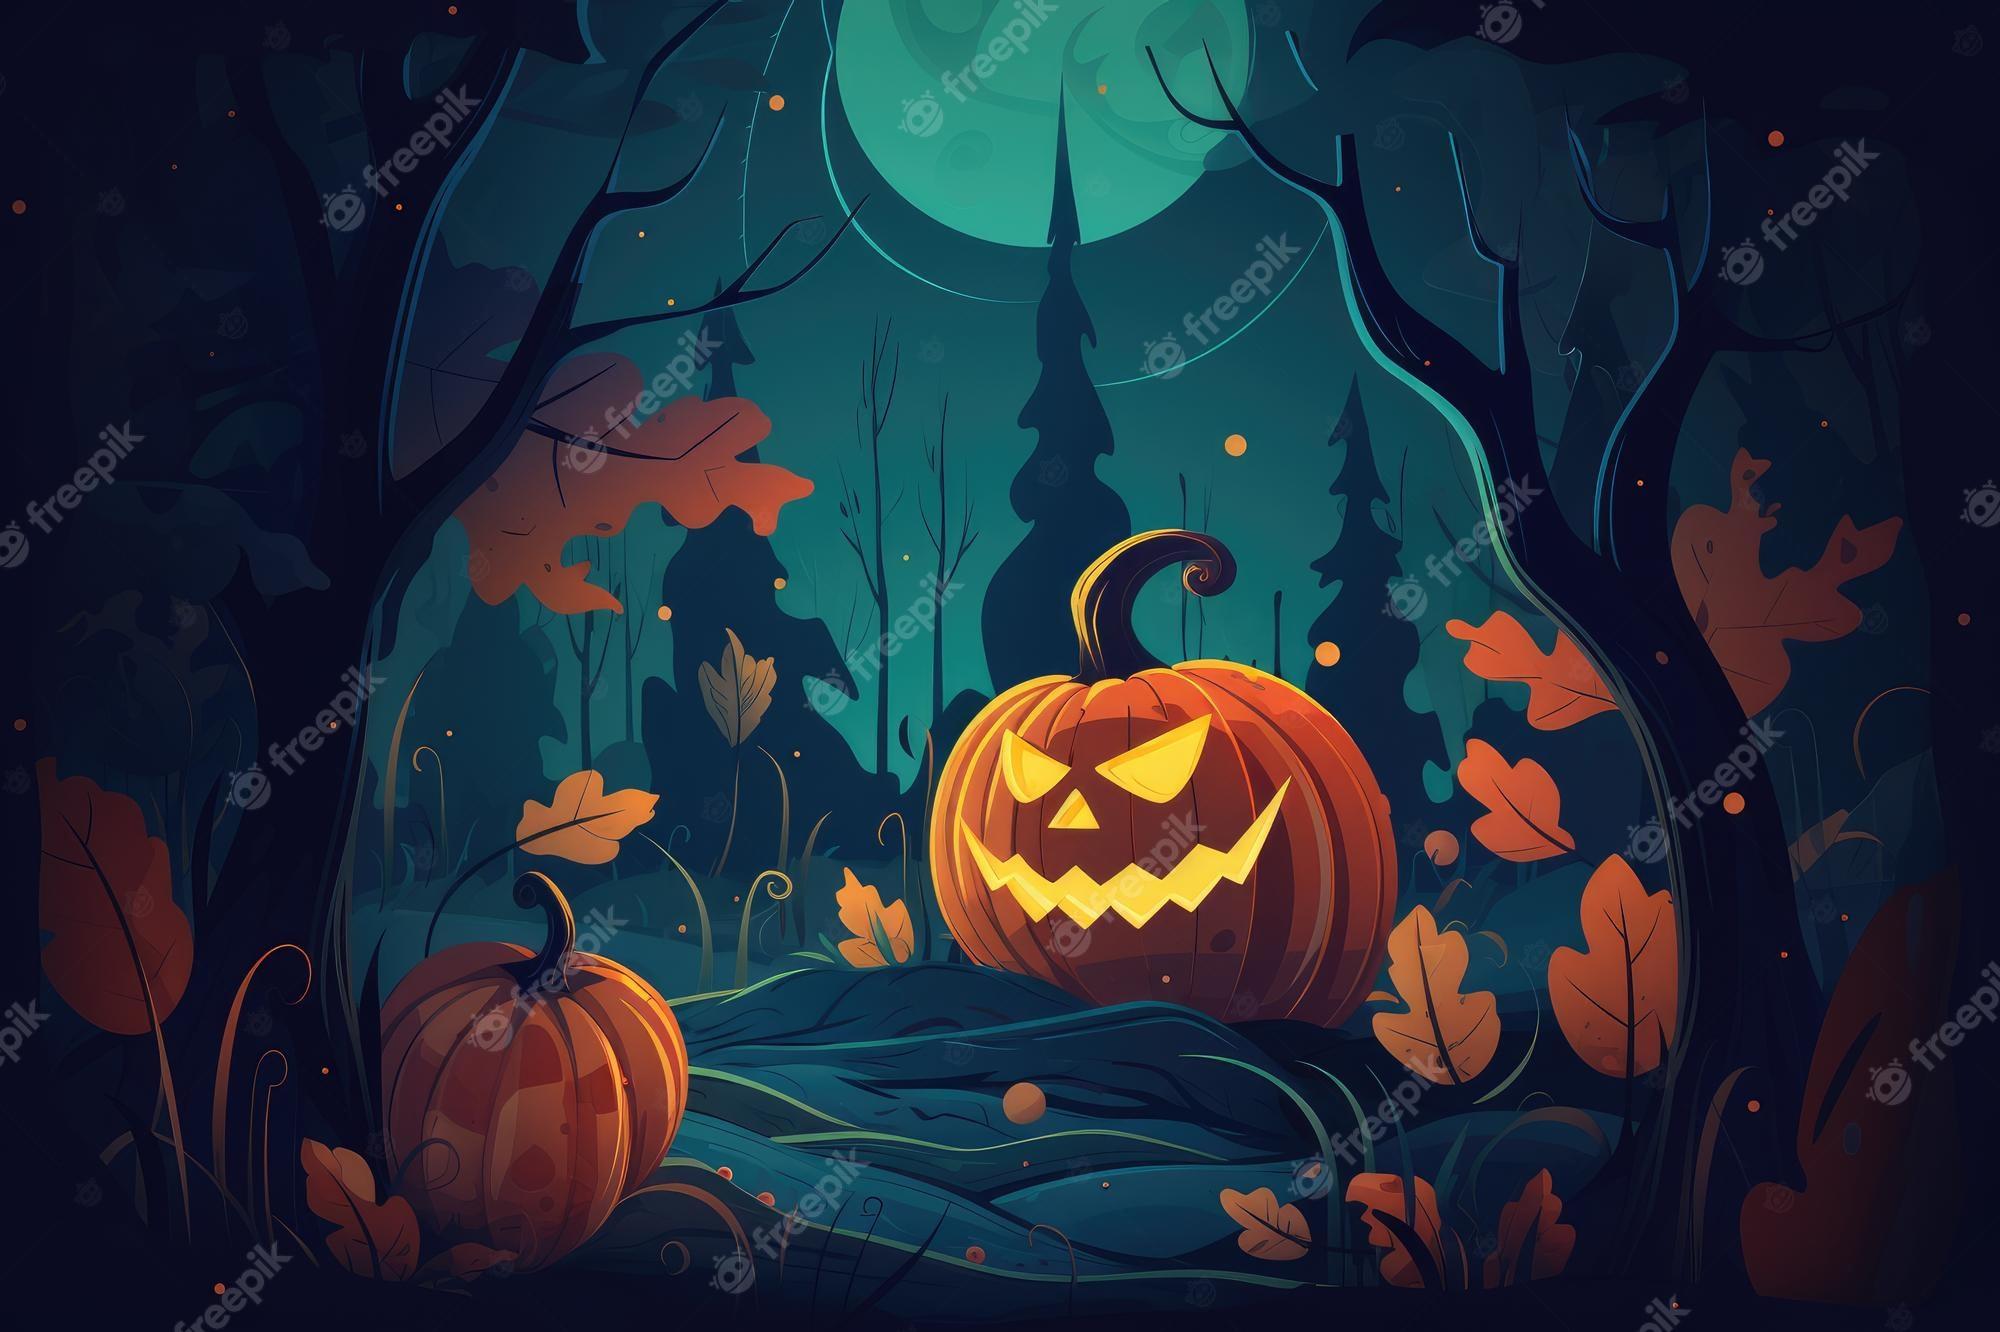 Premium Photo A Halloween Illustration Of Pumpkin In Dark